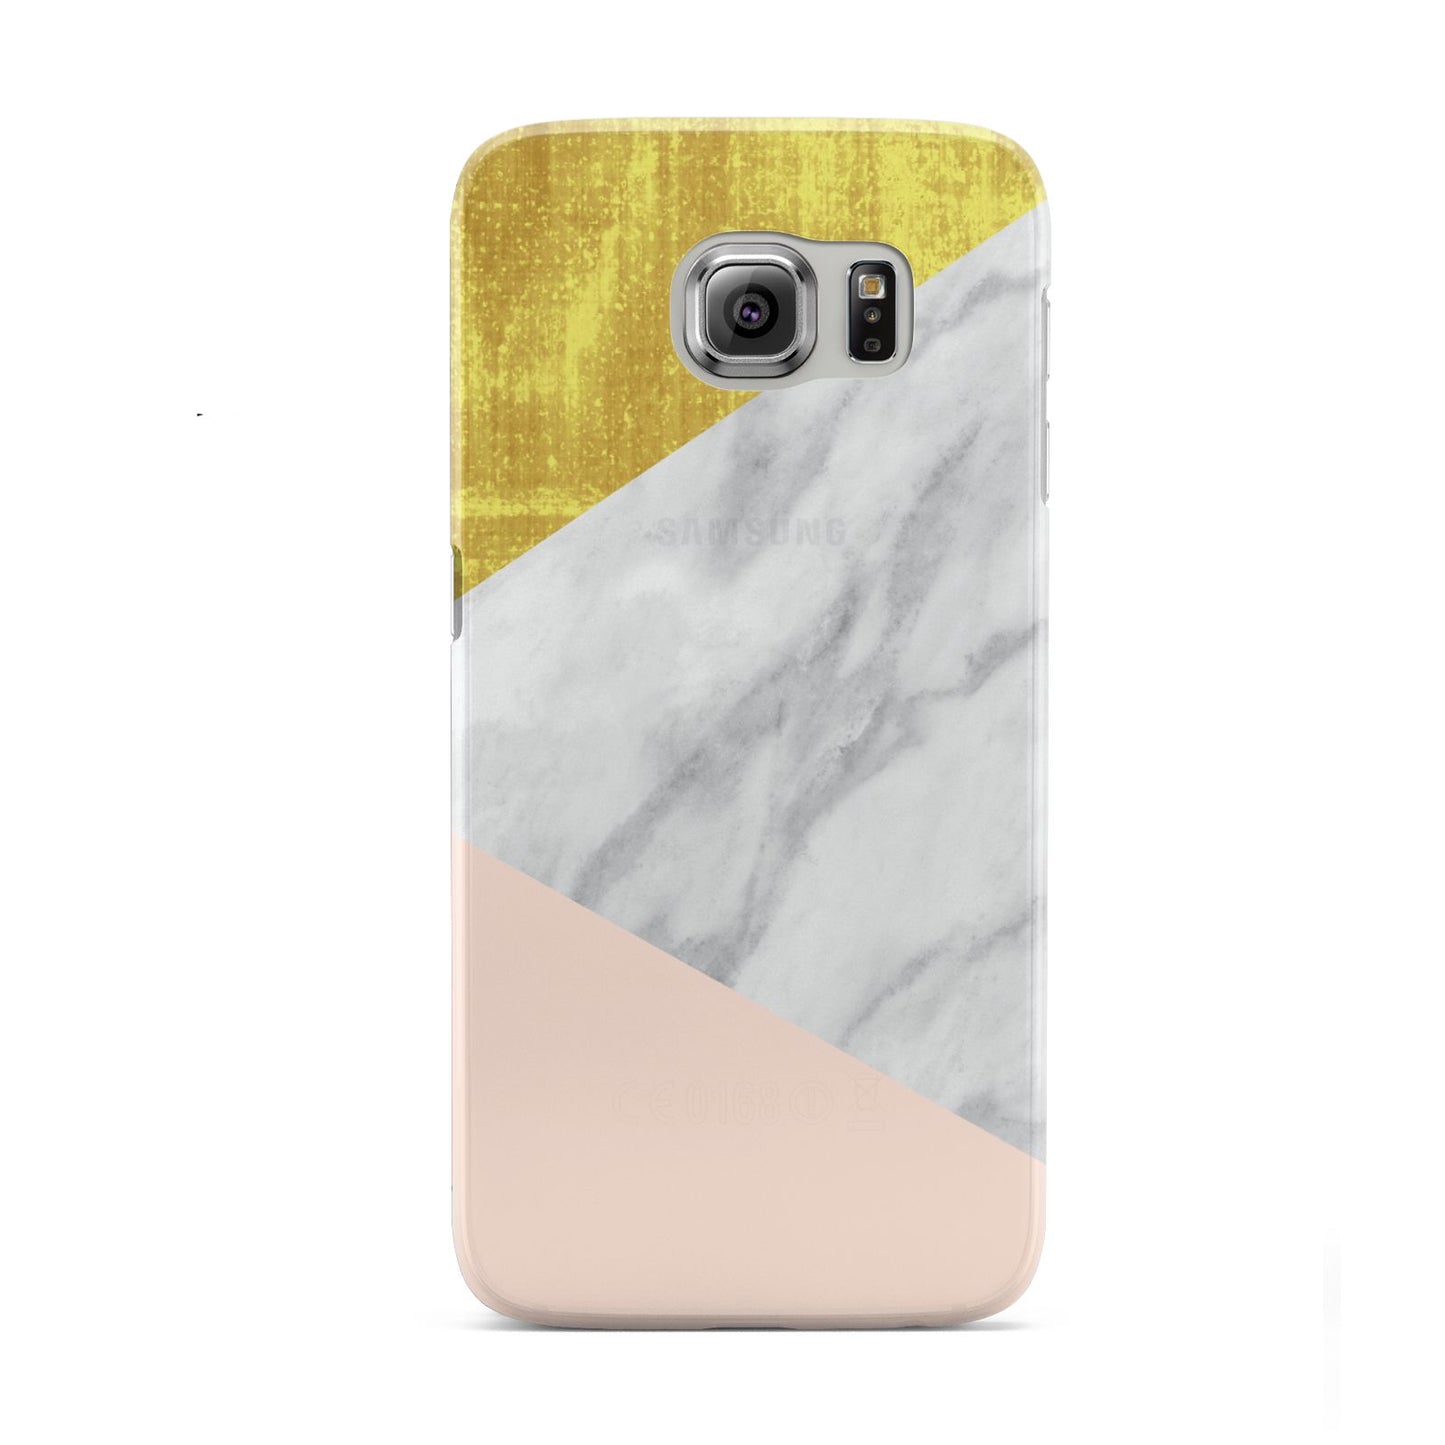 Marble White Gold Foil Peach Samsung Galaxy S6 Case